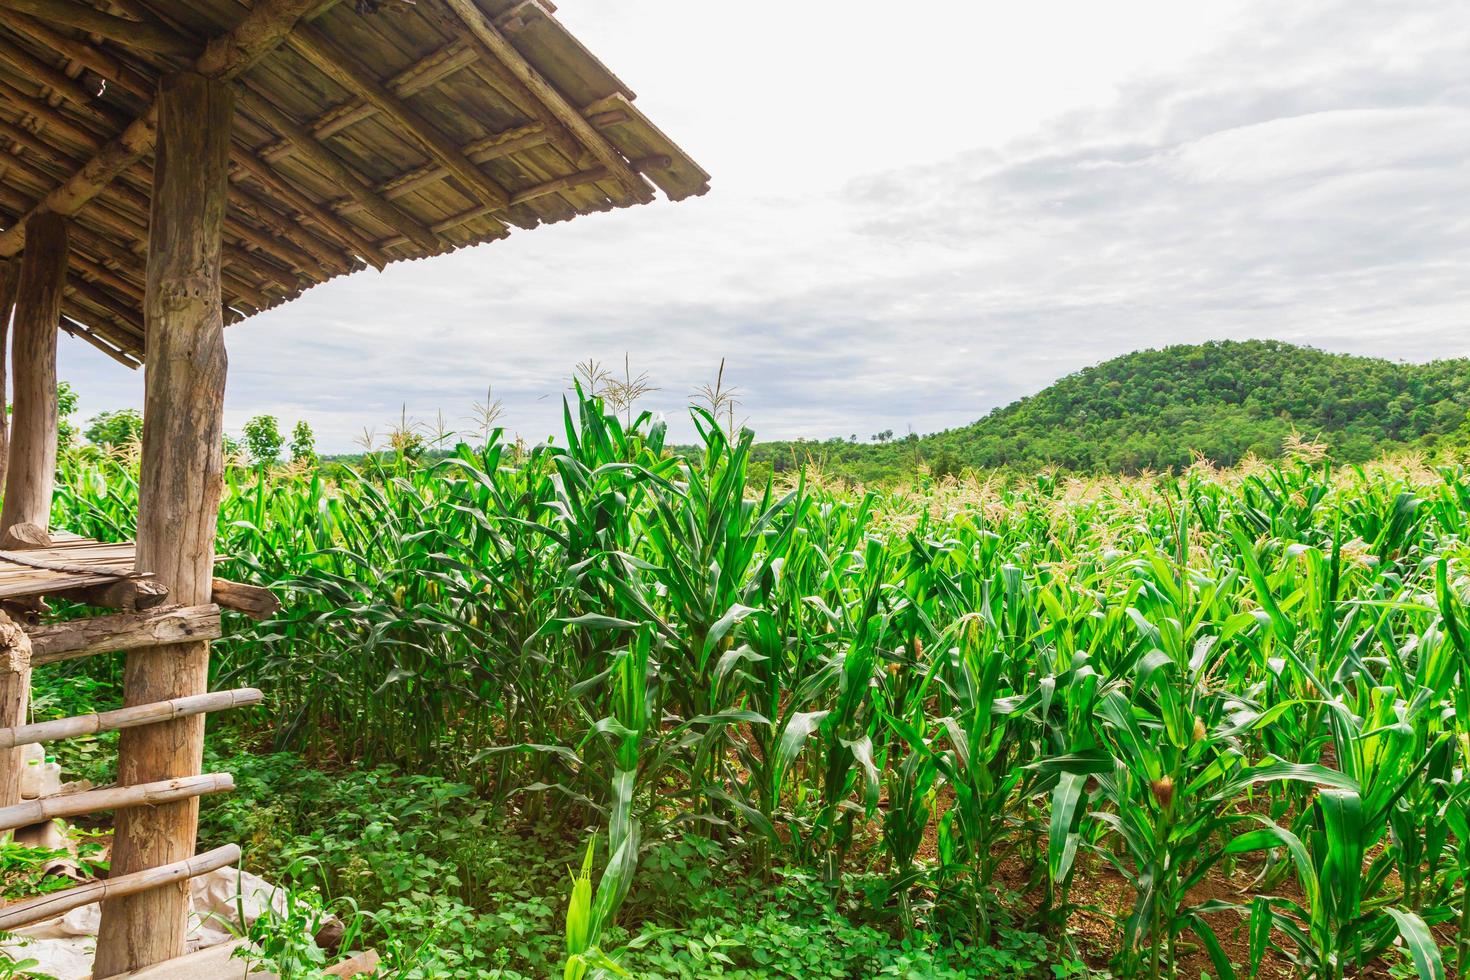 campo di mais verde nell'orto agricolo foto